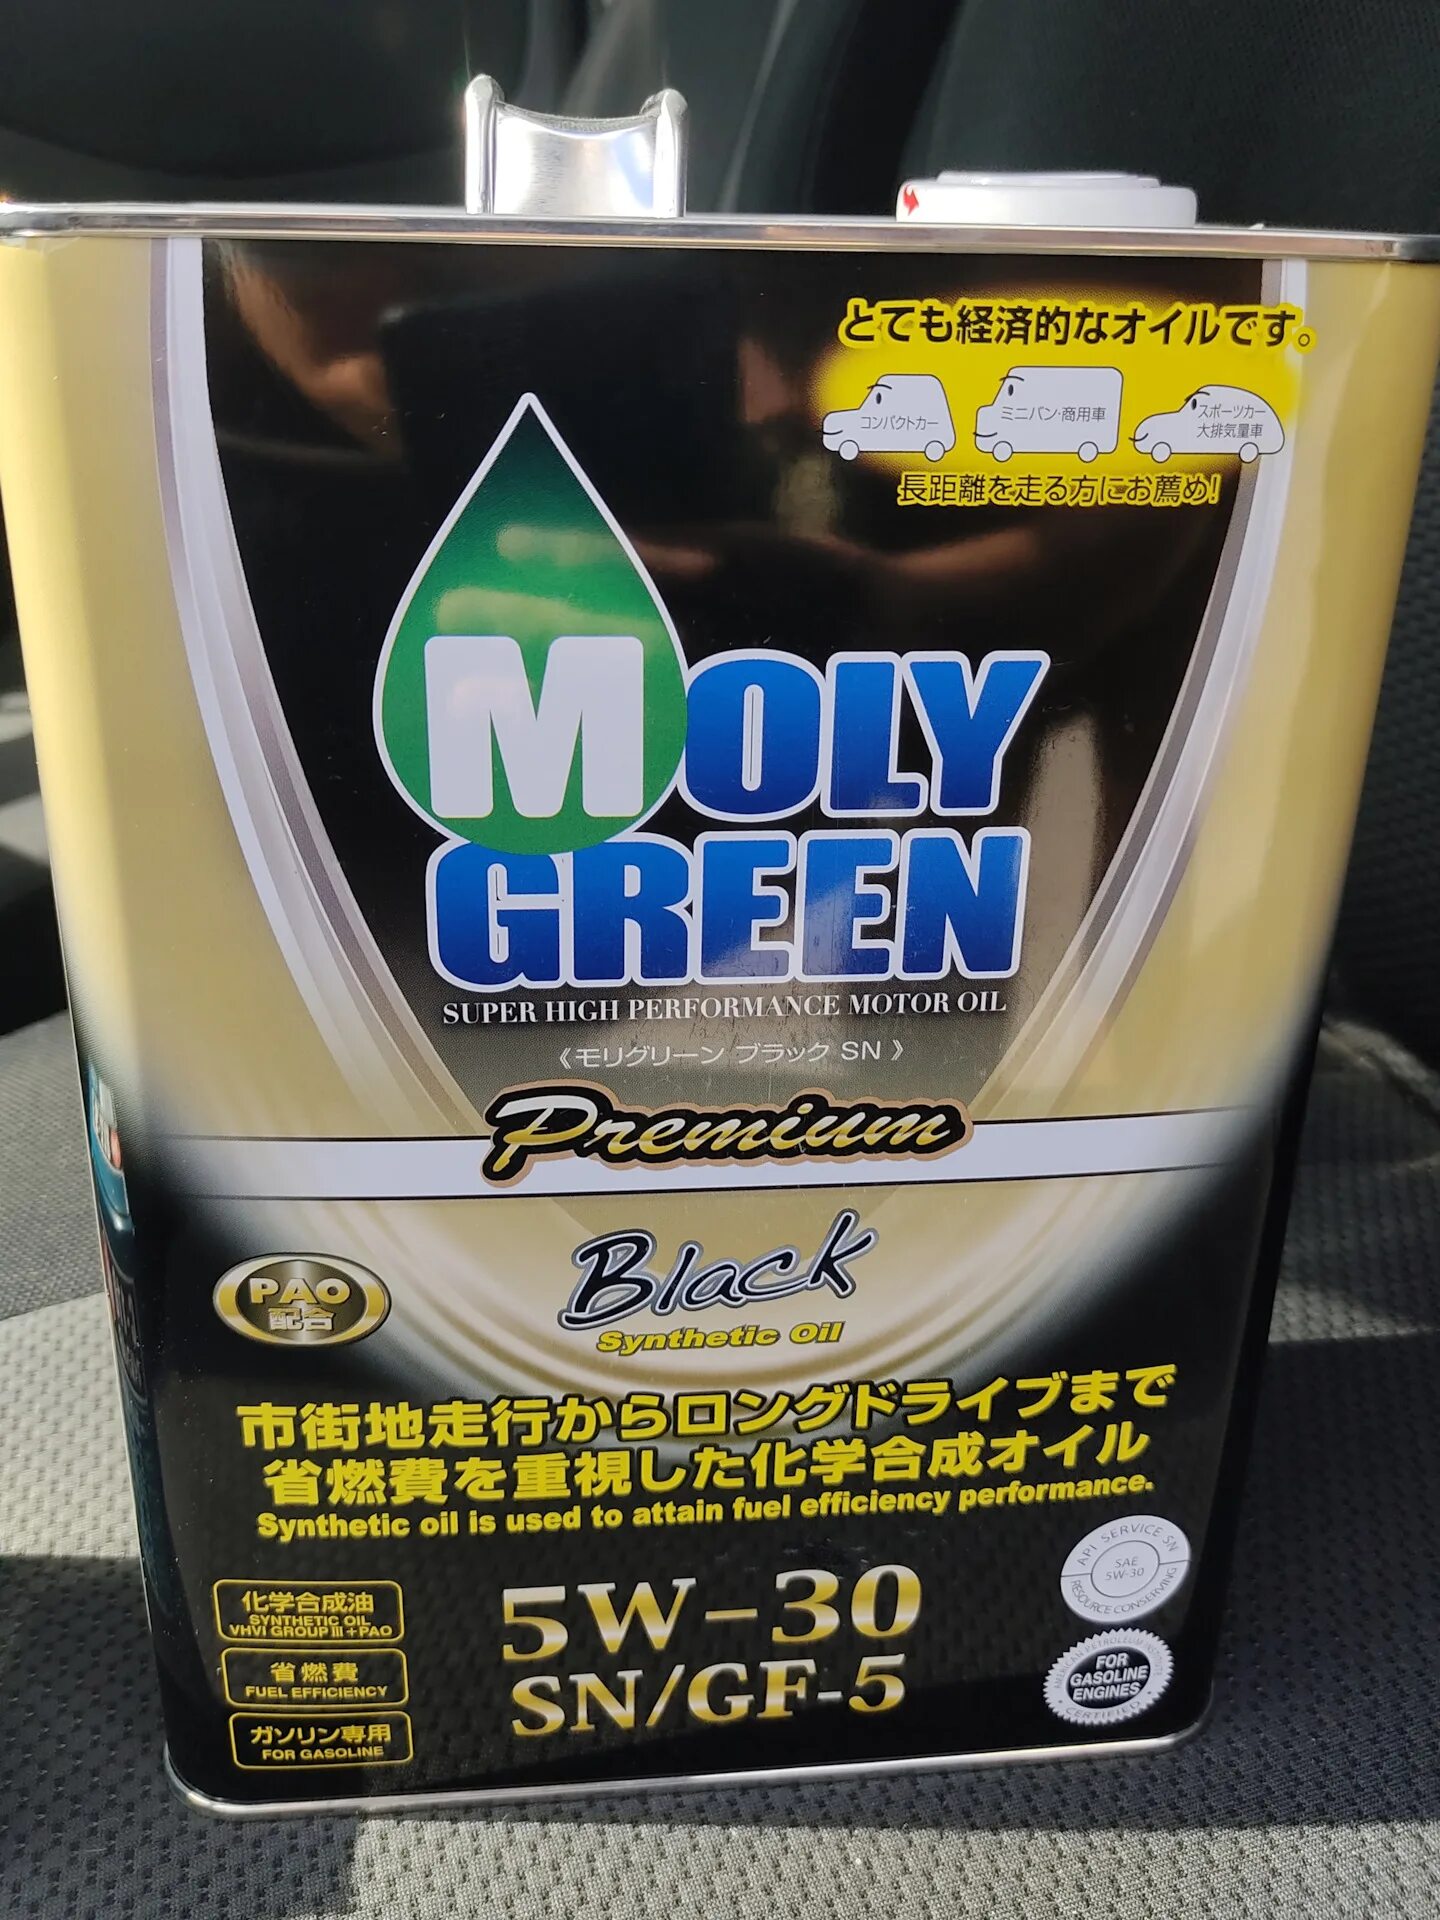 Масло молли грин 5w30. Моторное масло Moly Green 5w30. Moly Green 5w30 Premium. Moly Green 5w30 Premium Black. Моли Грин премиум 5 30.